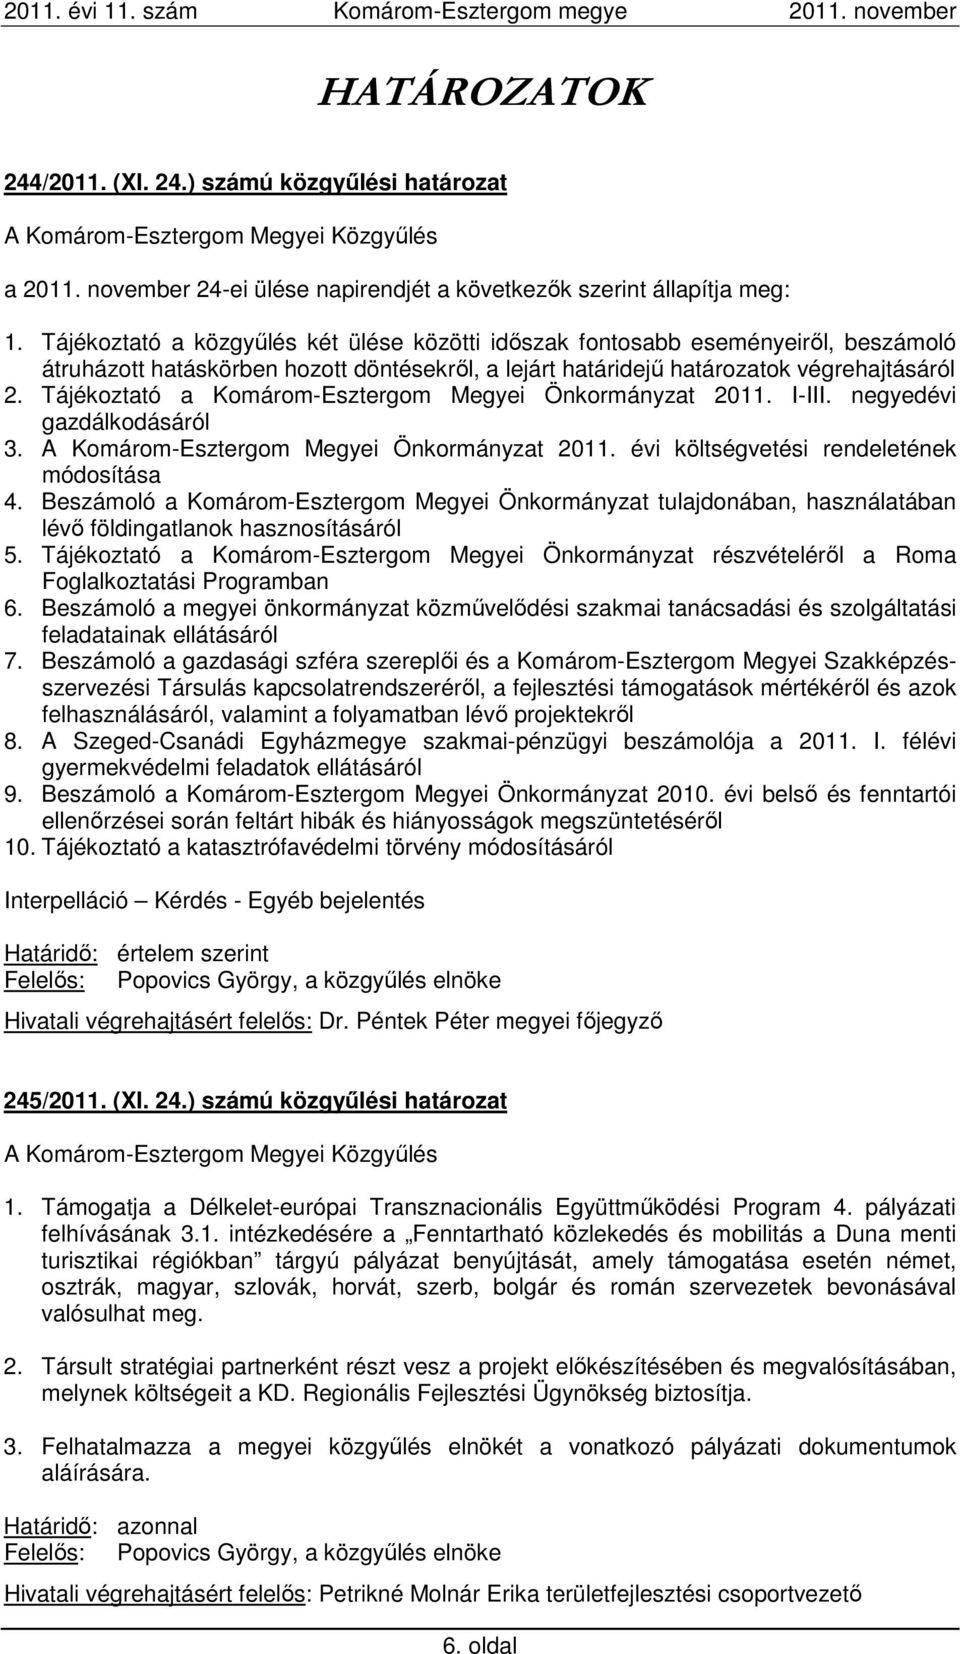 Tájékoztató a Komárom-Esztergom Megyei Önkormányzat 2011. I-III. negyedévi gazdálkodásáról 3. A Komárom-Esztergom Megyei Önkormányzat 2011. évi költségvetési rendeletének módosítása 4.